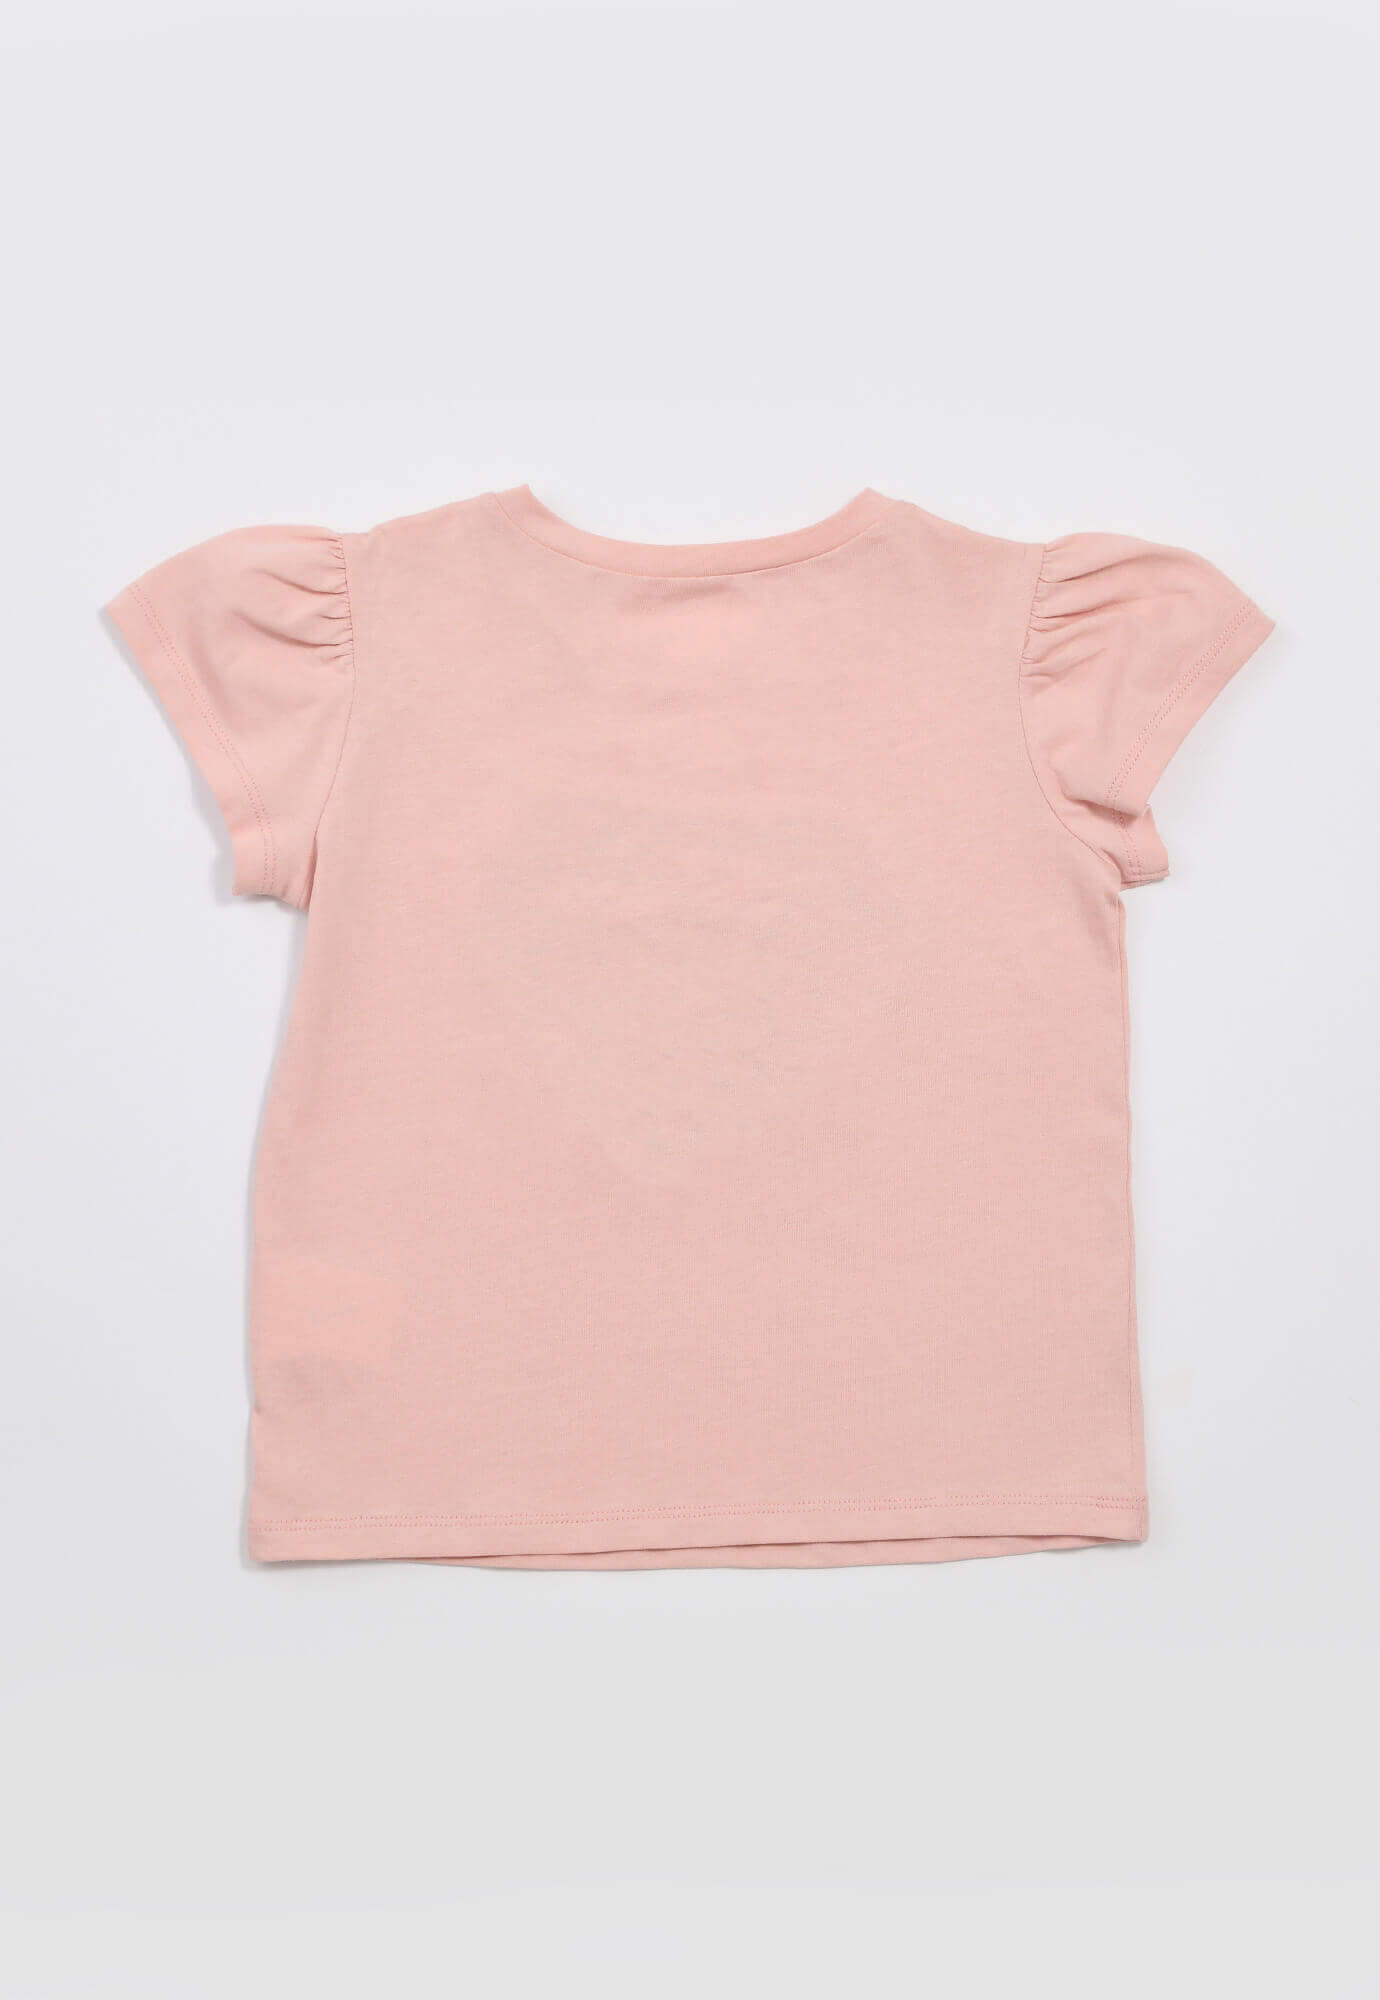 Camiseta de algodón de manga corta para bebé niña, color rosa